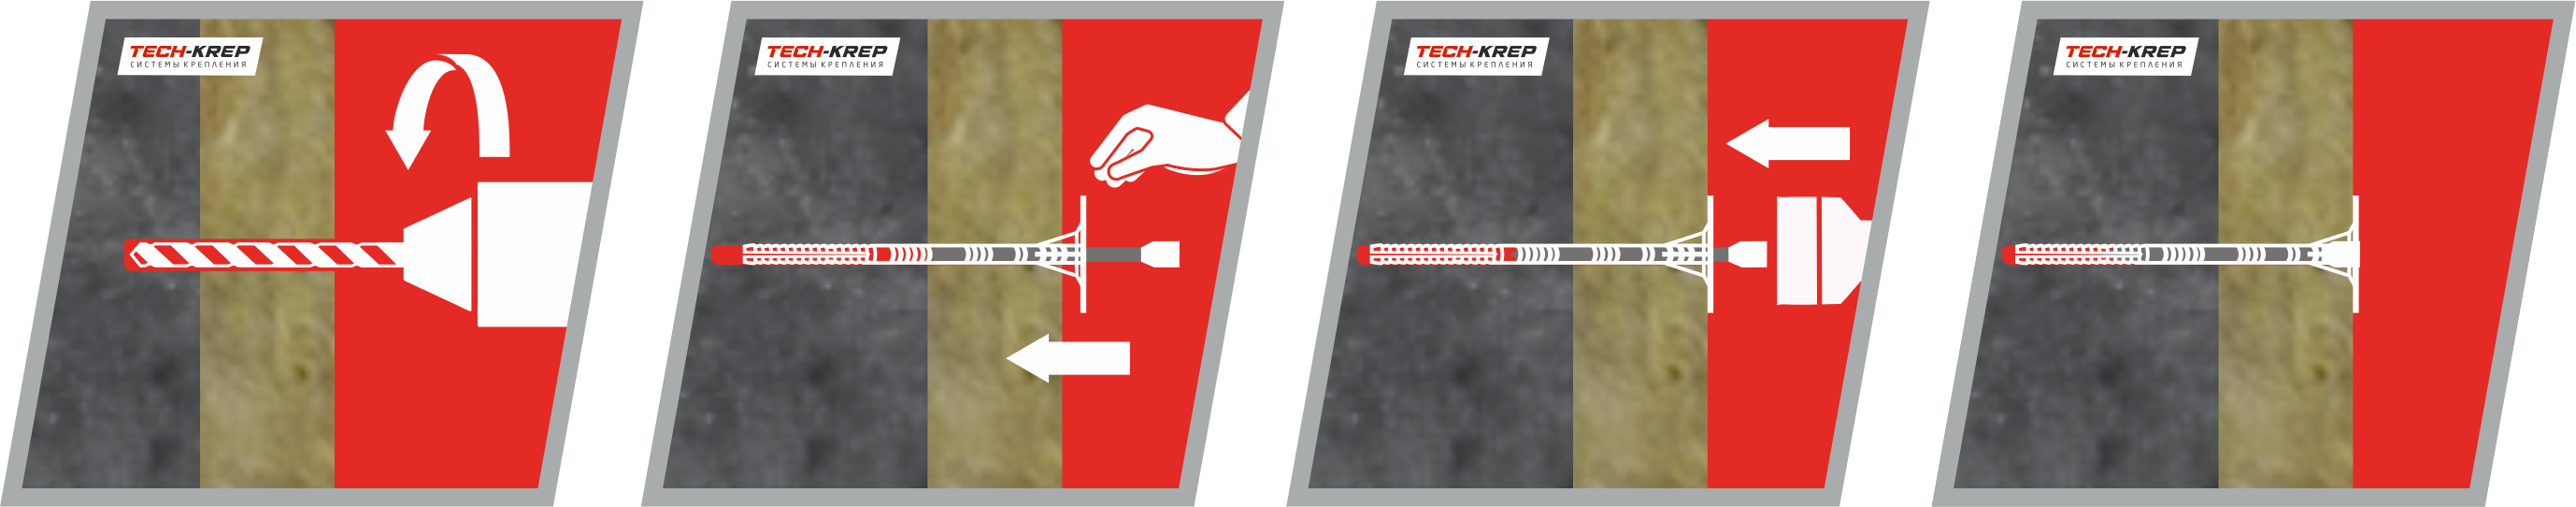 Схема крепления теплоизоляционного материала к бетонному основанию дюбелем IZL-T Tech-KREP